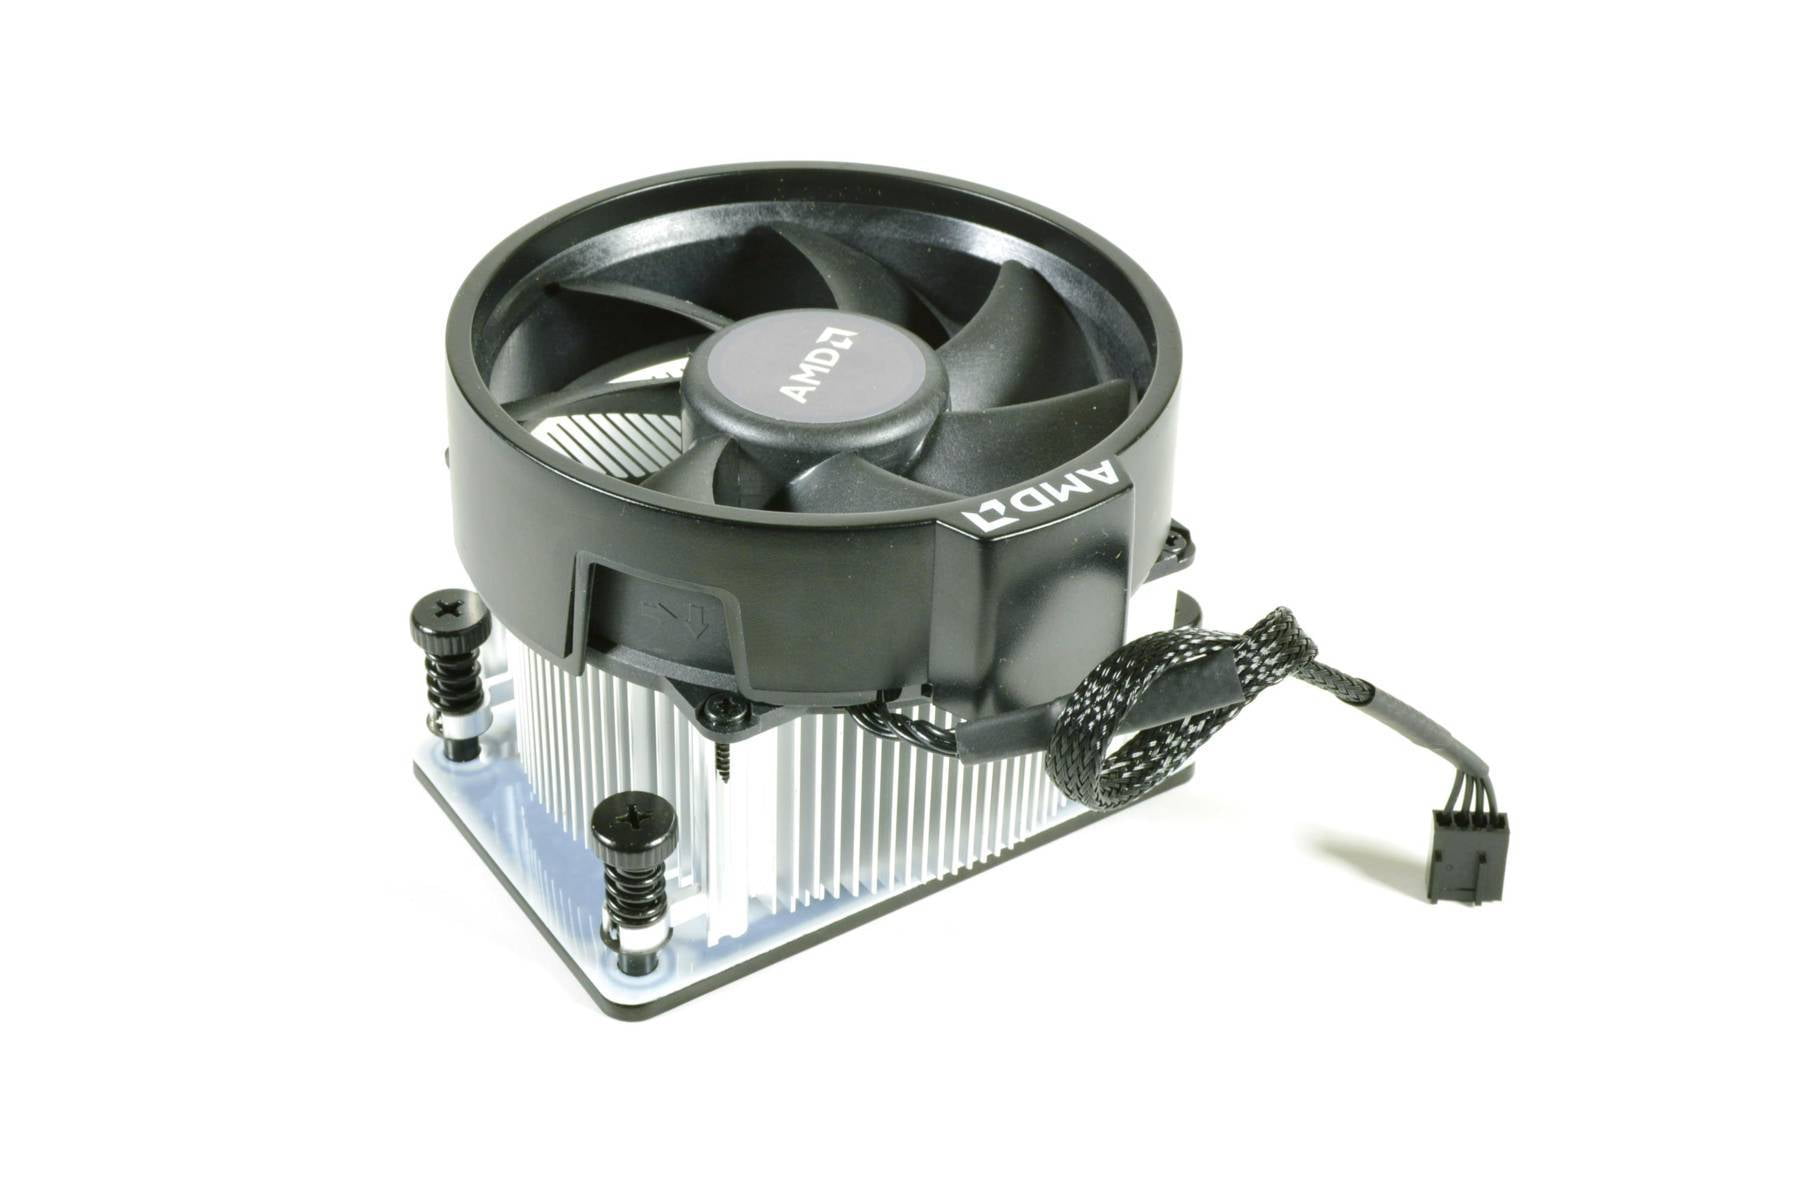 AMD Ryzen Wraith Spire AM4 Socket Cooler Heatsink Fan with Backplate  712-000071 Refurbished - Walmart.com